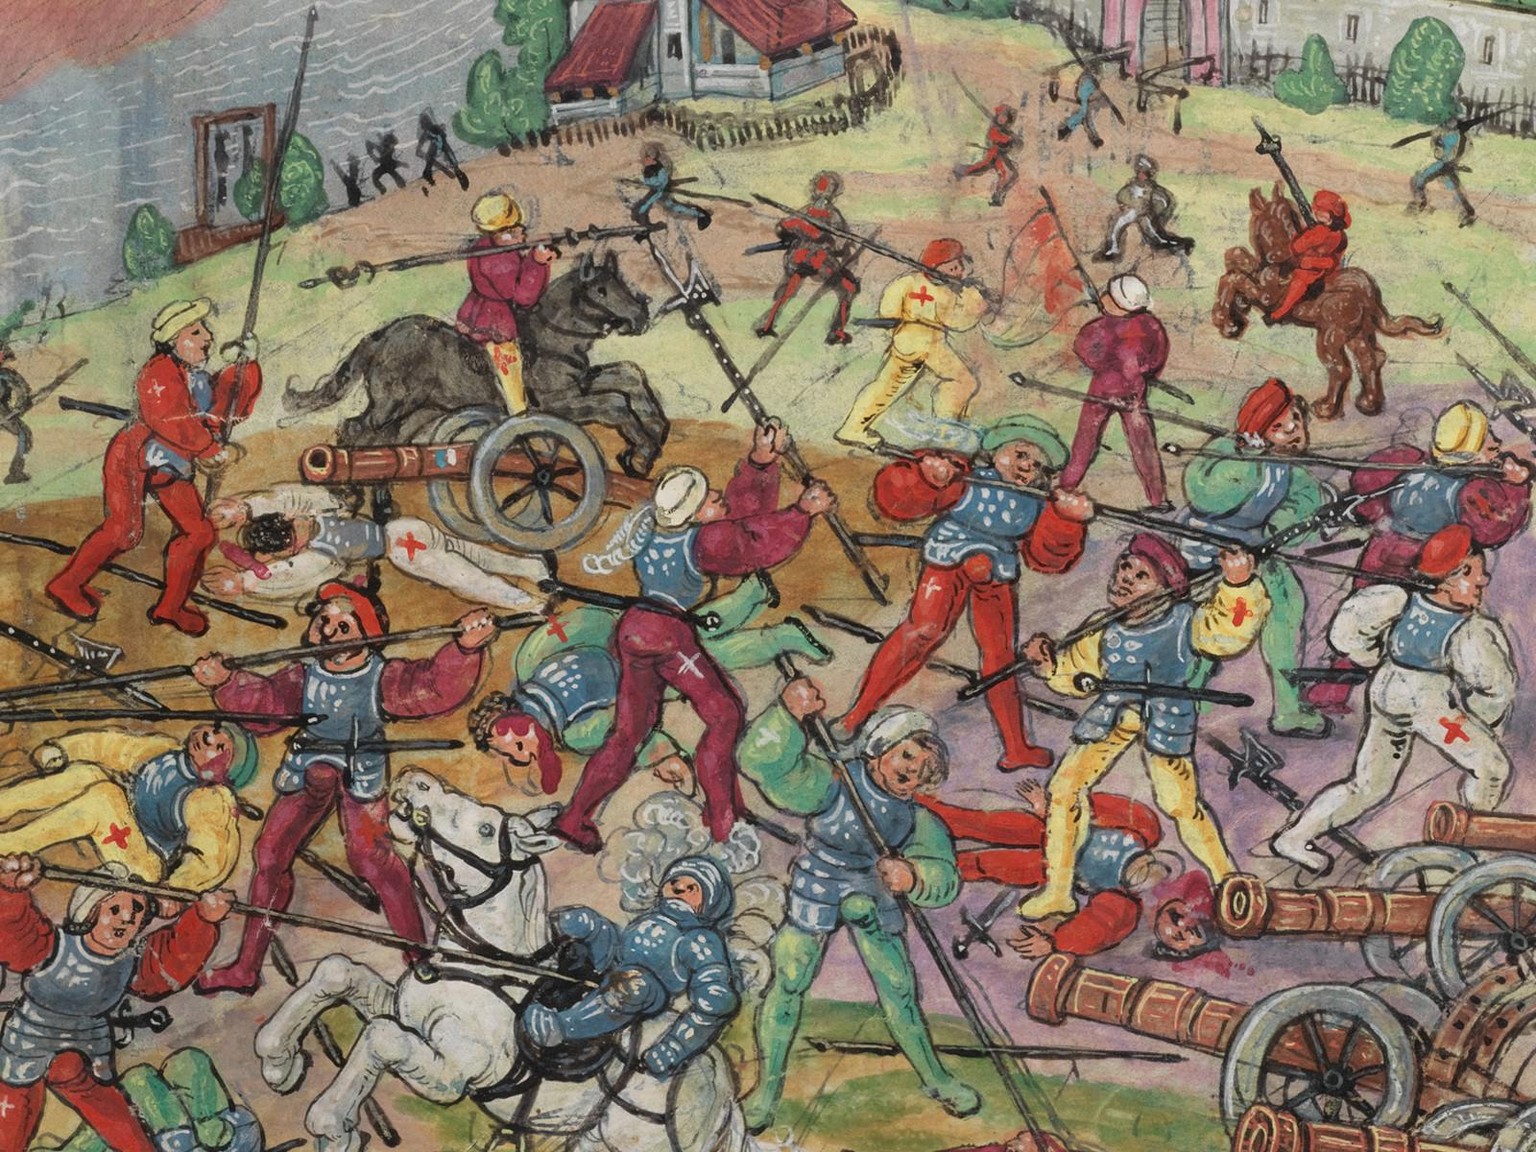 Die Schlacht im Schwaderloh am 11. April 1499 (Ausschnitt).
https://www.e-codices.ch/fr/kol/S0023-2/369